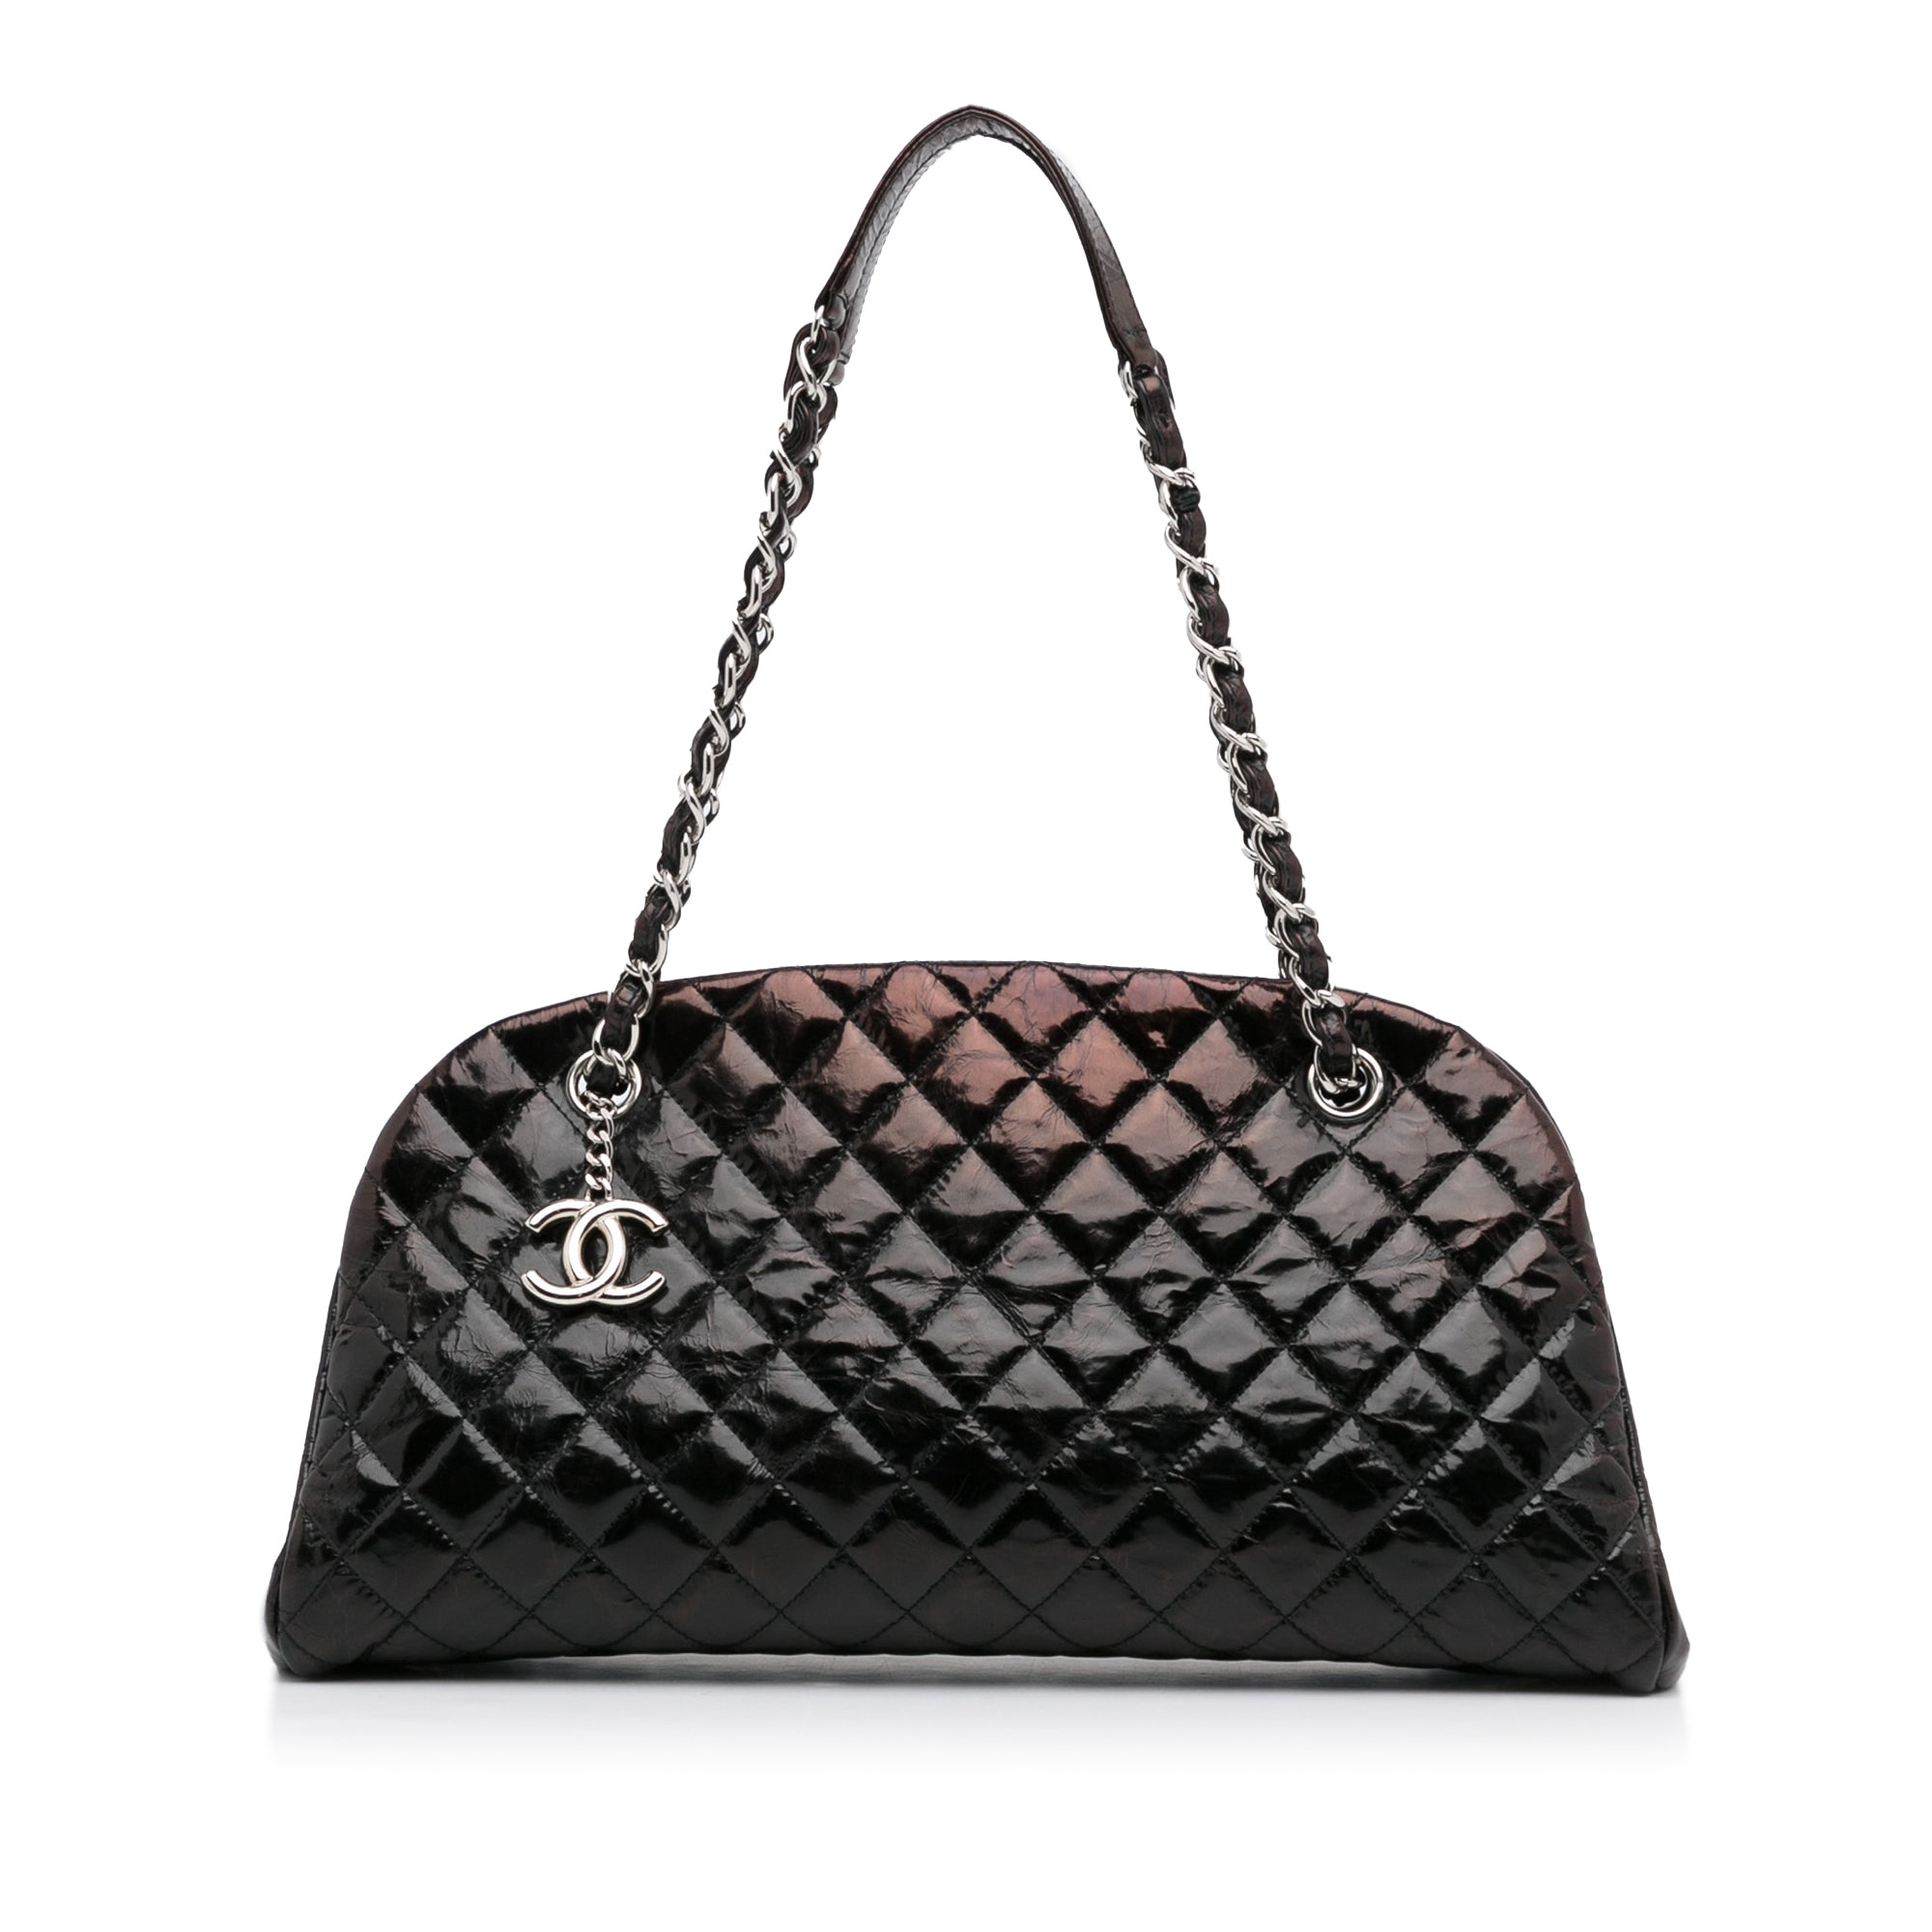 Black Chanel Just Mademoiselle Shoulder Bag